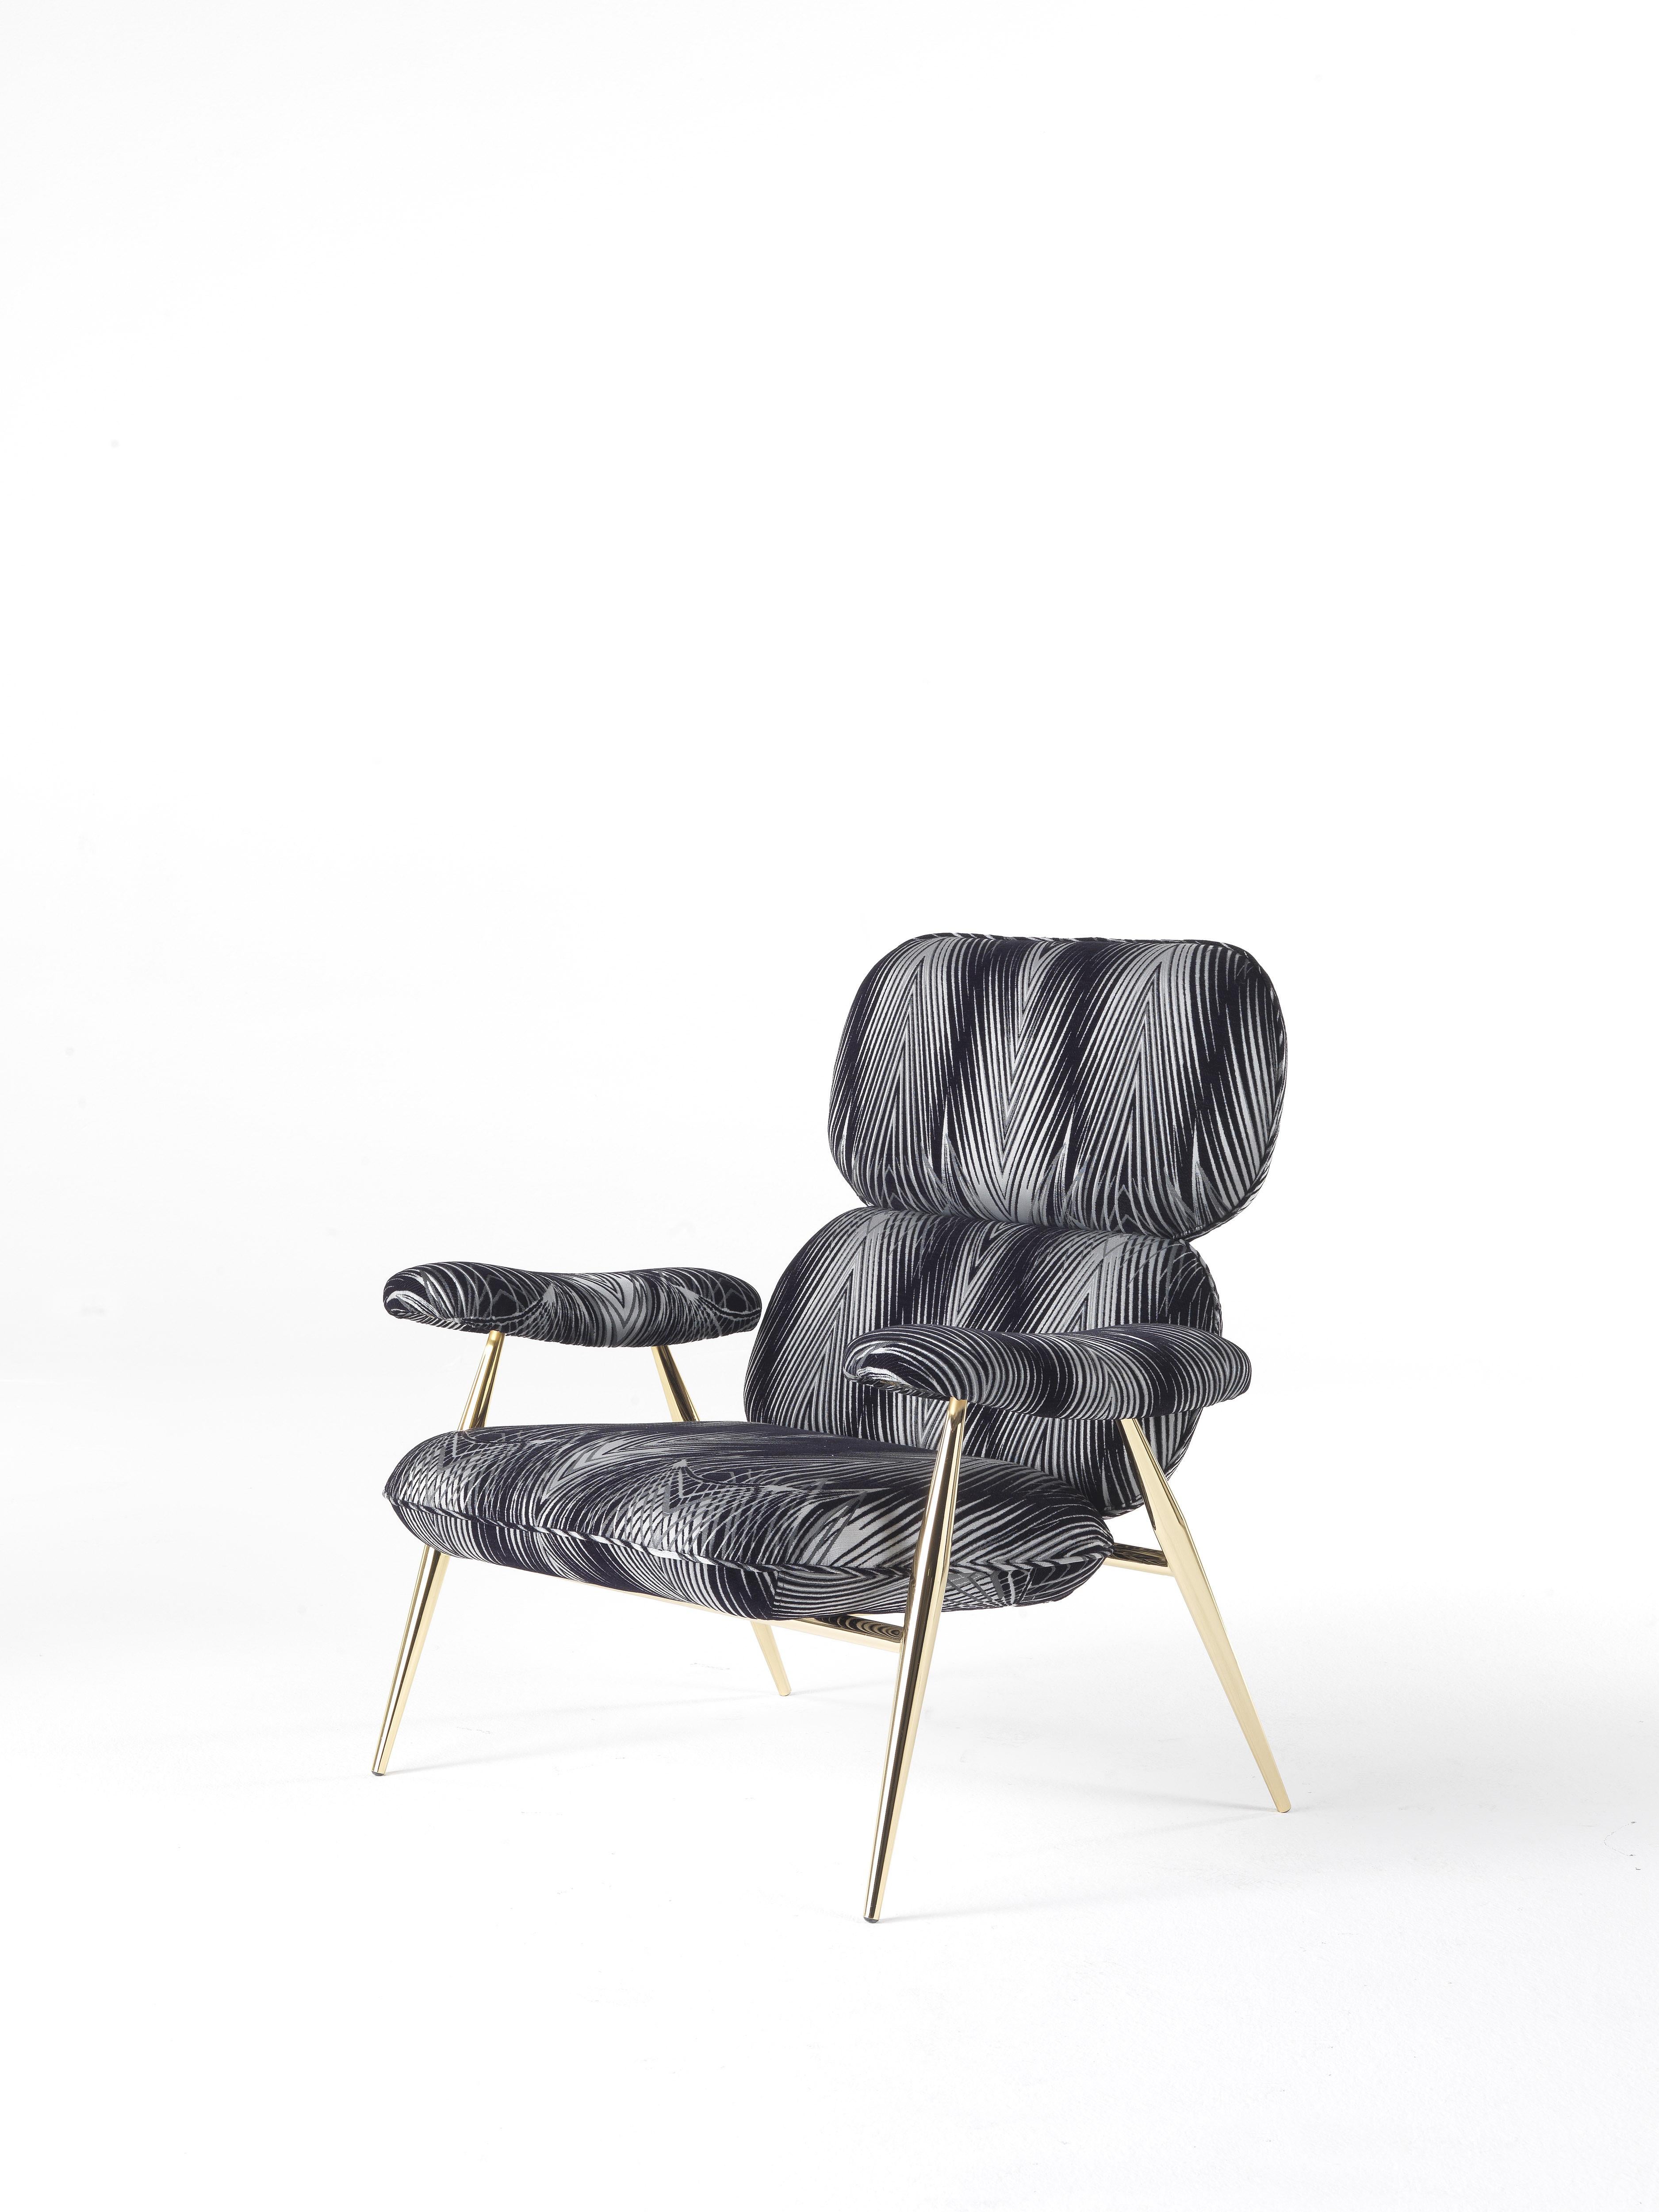 Ein unverwechselbarer Luxus-Glam-Charme für den Tahiti-Sessel mit dünnen, goldglänzenden Beinen. Erhältlich in den neuen Jacquard-Stoffen mit Luchs-Muster oder Charlize-Print mit Palmenblättern, verkörpert es perfekt den Geist von Roberto Cavalli,